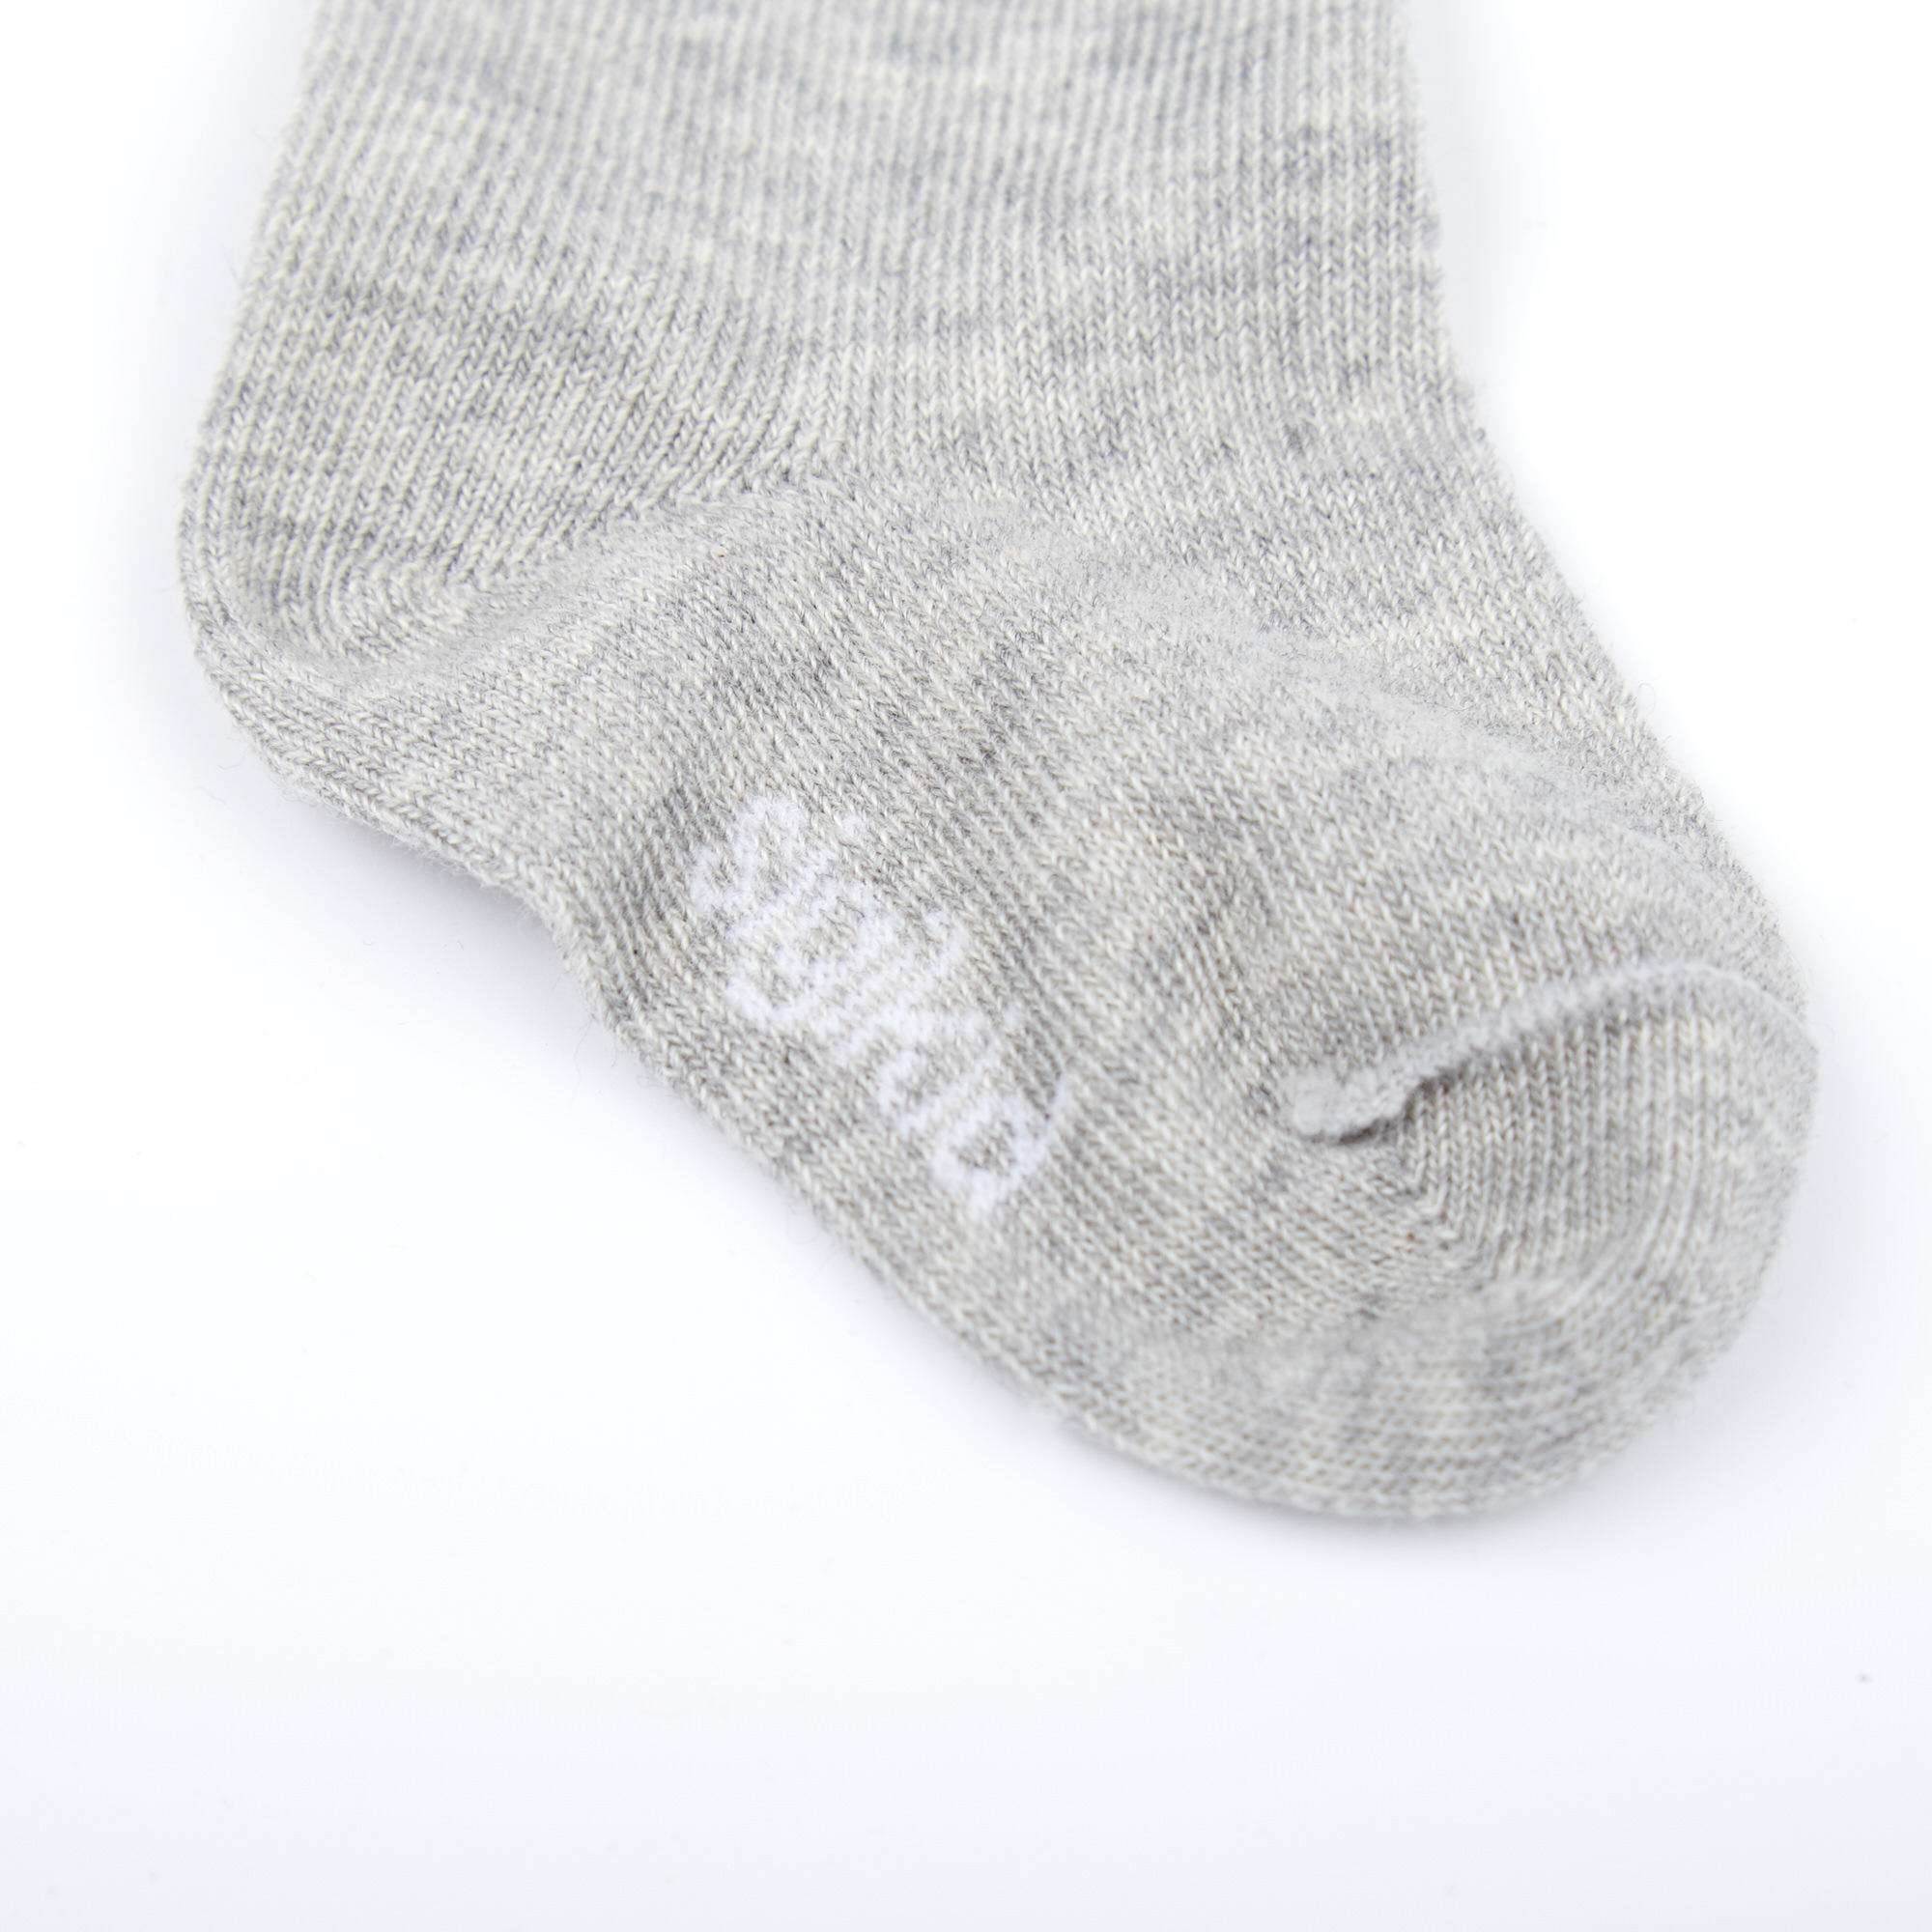 Baby Socken, grau meliert